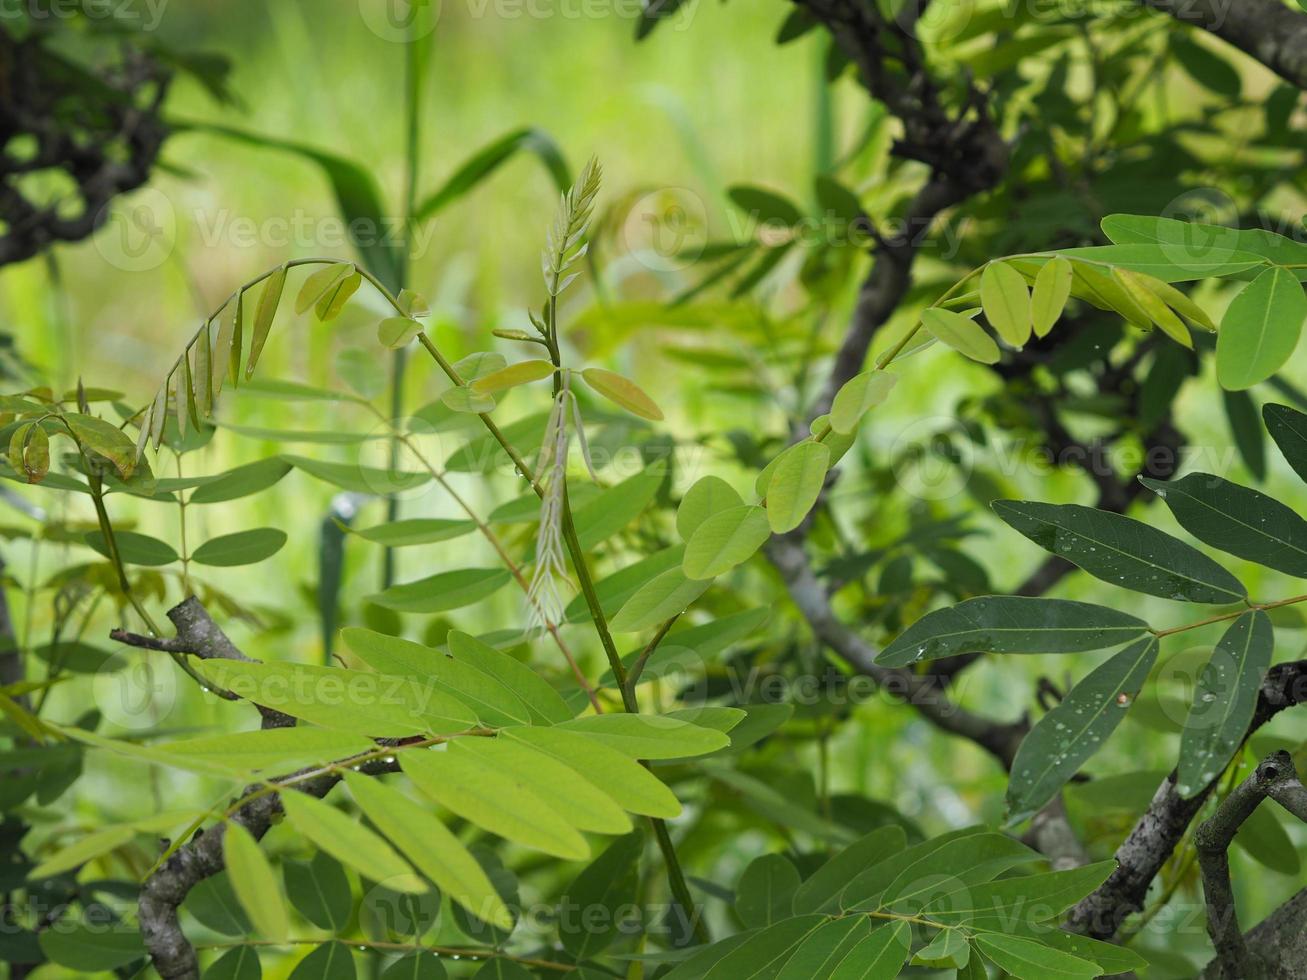 Senna siamea Lam. Irwin and Barneby, Leguminosae, Caesalpinioideae, leave vegetable green leaf on nature background, Thai herb food photo